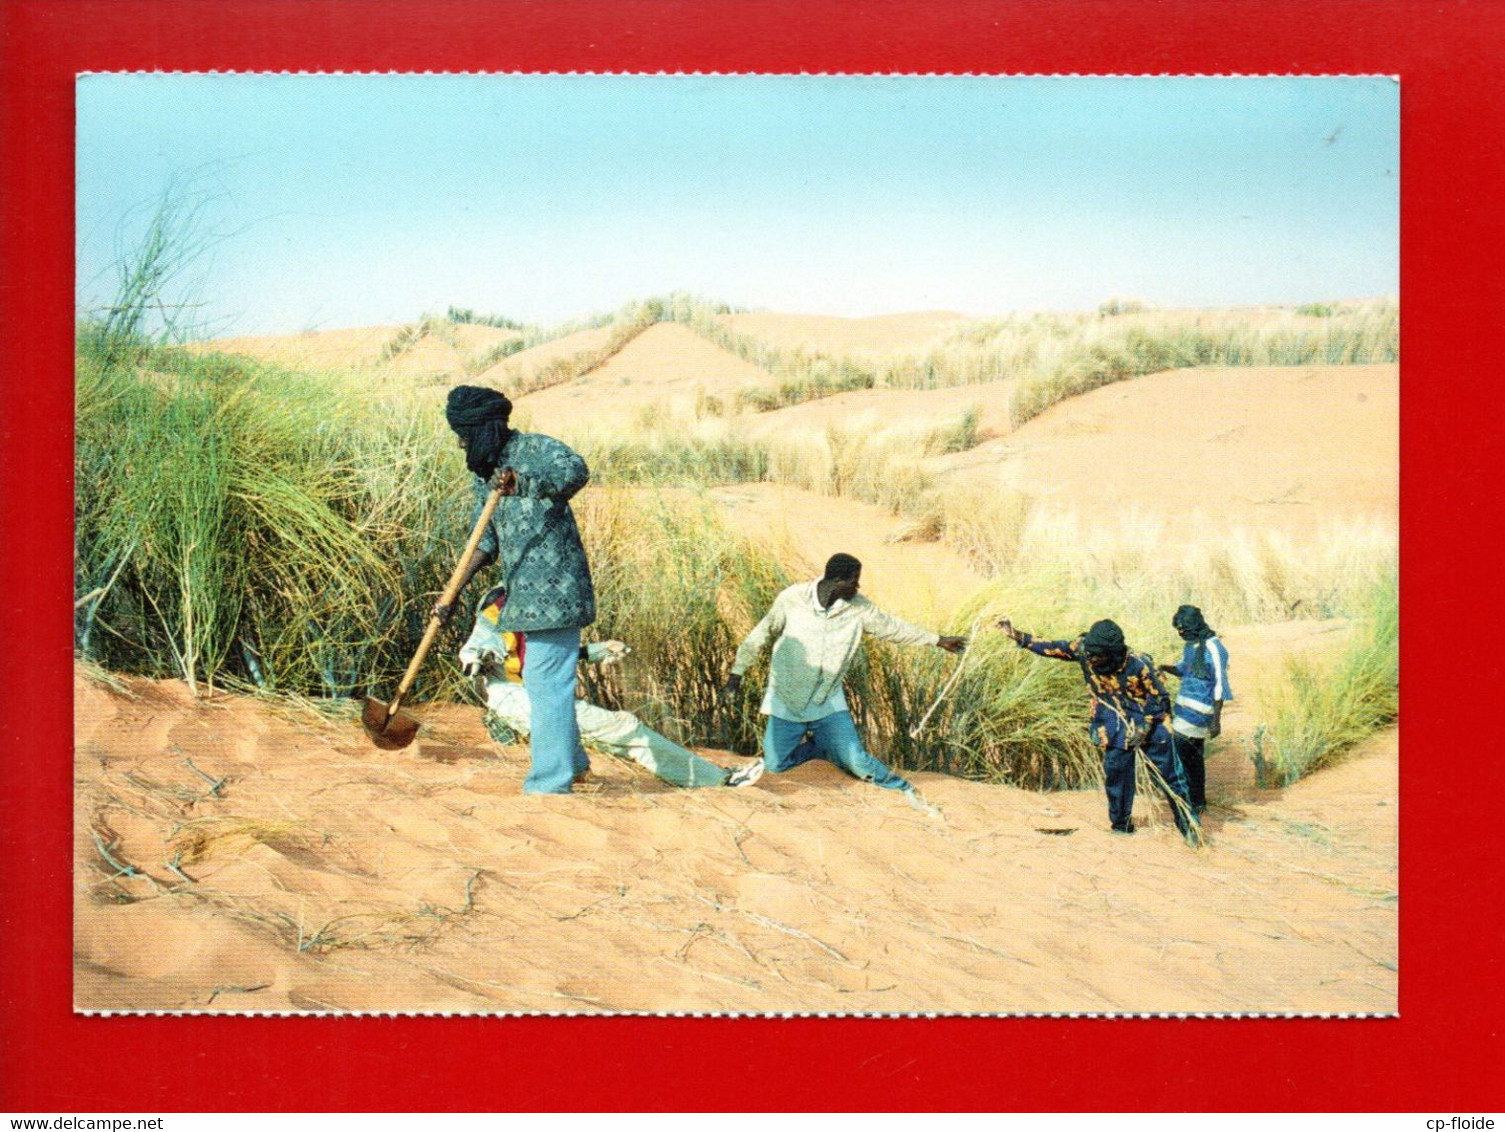 MAURITANIE . SORTIE DE NOUAKCHOFF LES VENTS DE SABLE SONT OMNI PRÉSENTS. L'HOMME DEFIE LE DÉSERT - Ref. N°36795 - - Mauretanien